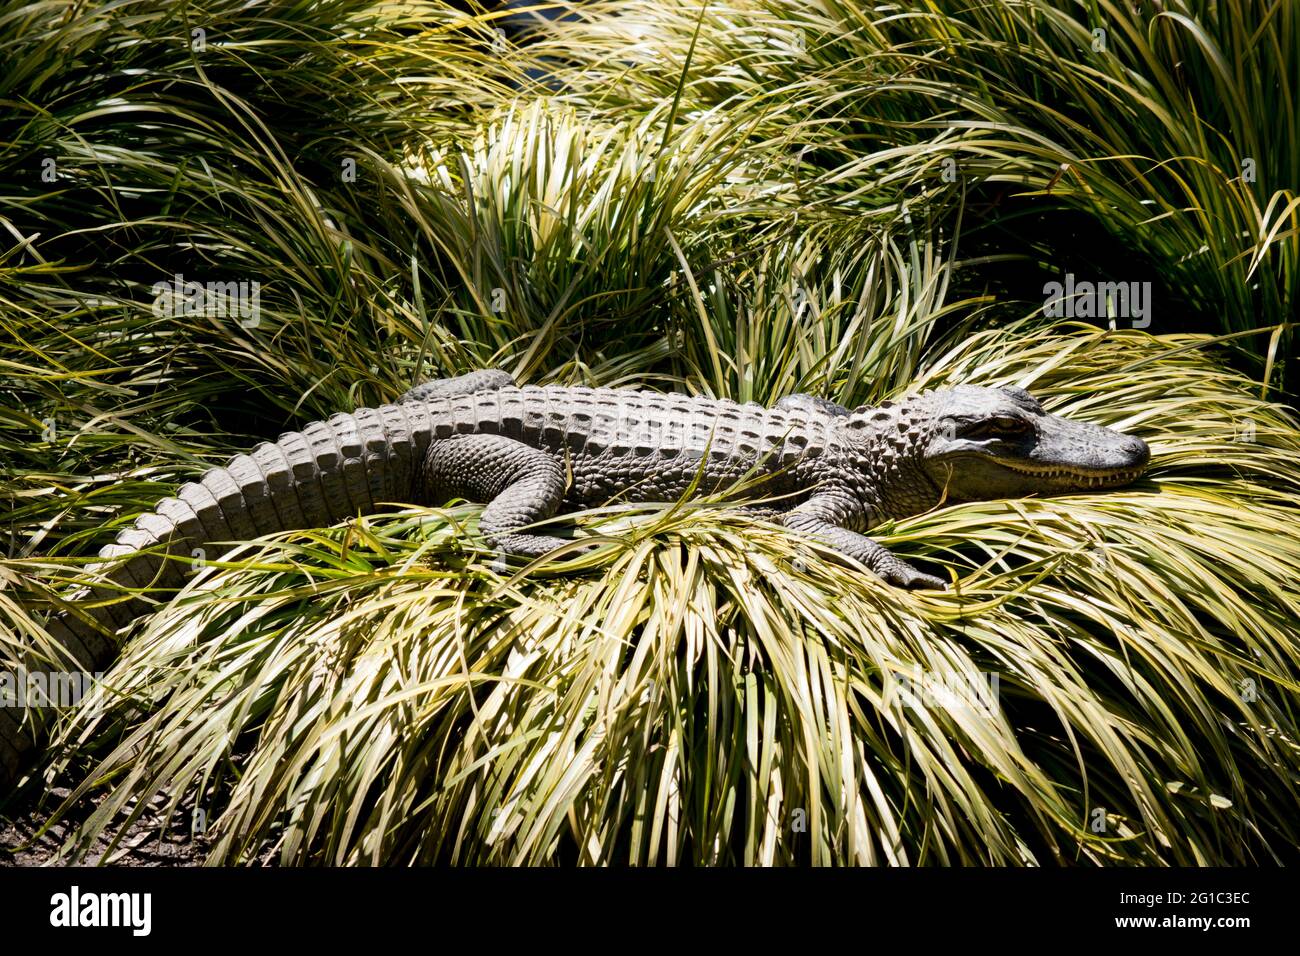 l'alligator attend pour bondir sur tout ce qui le passe Banque D'Images